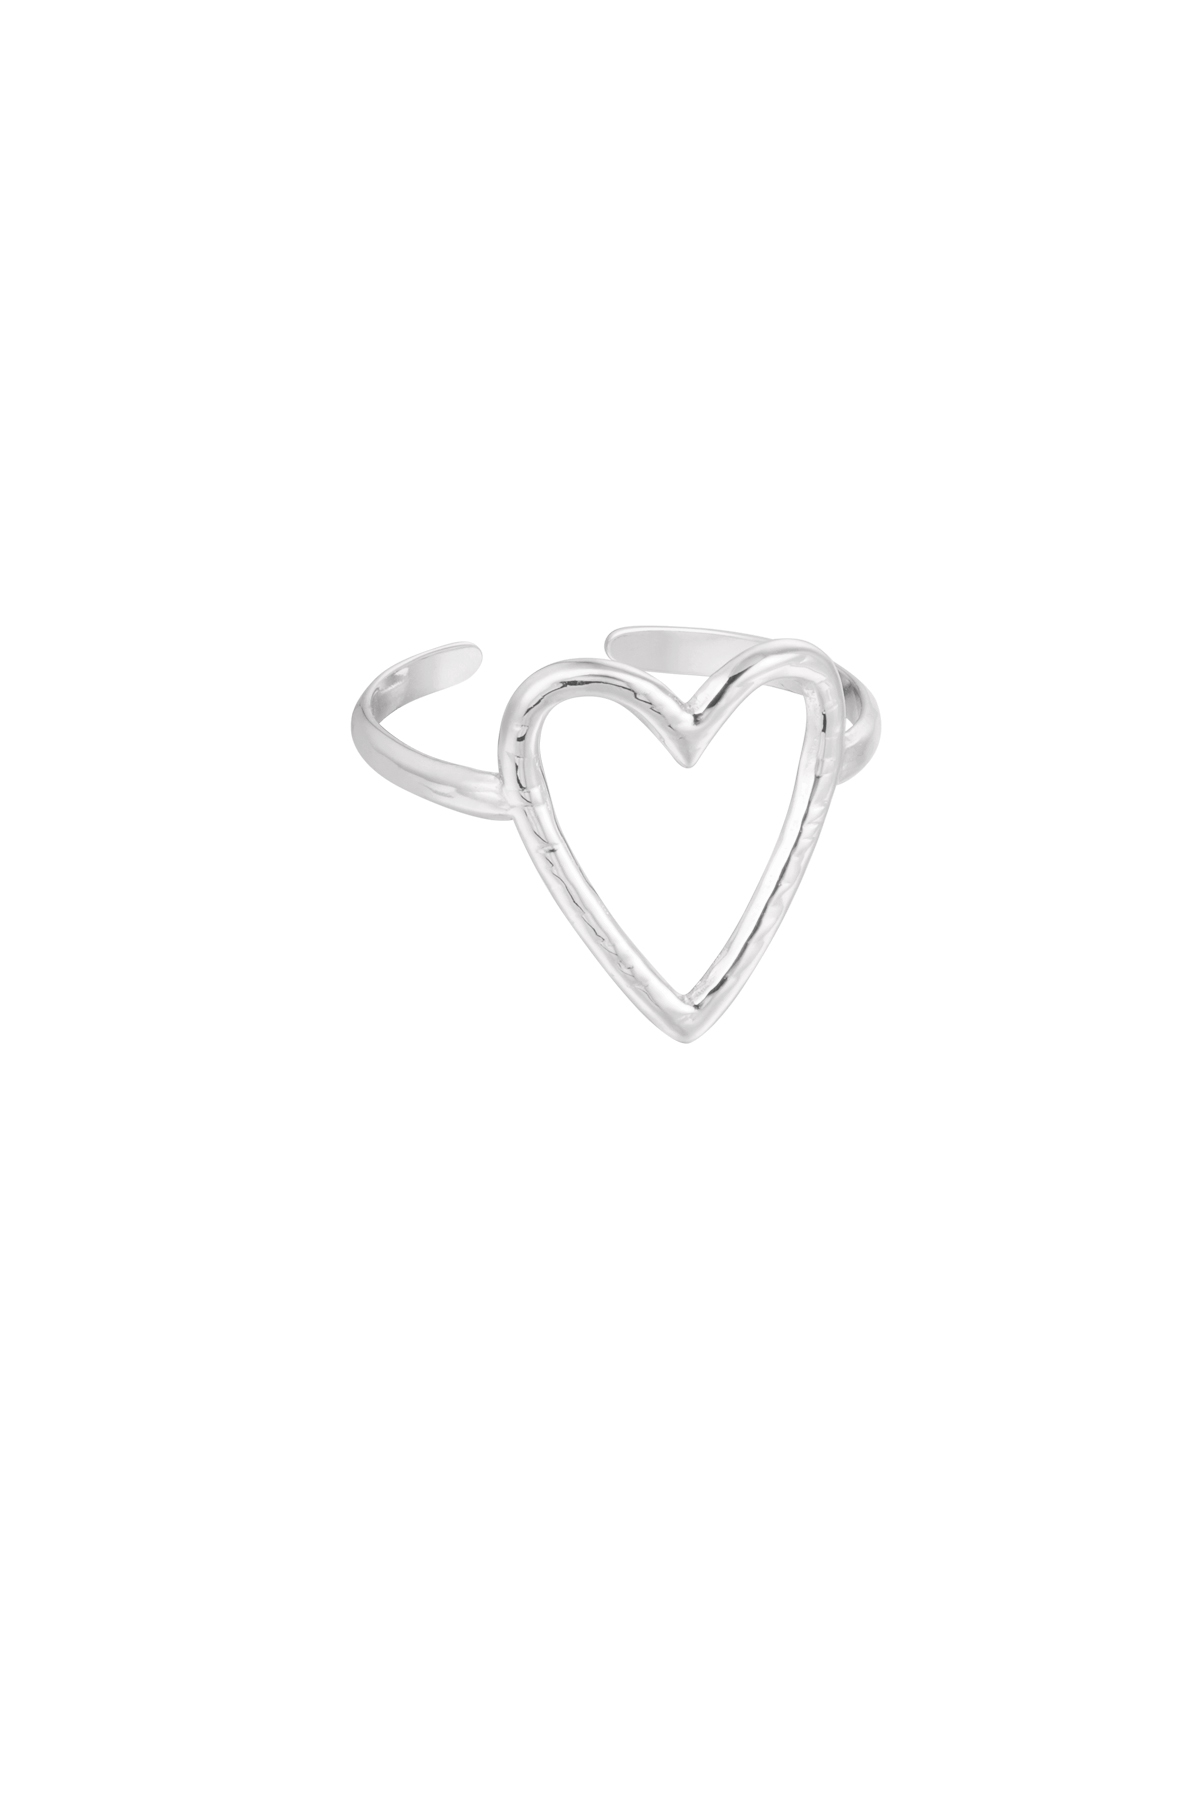 Anello cuore grande - argento h5 